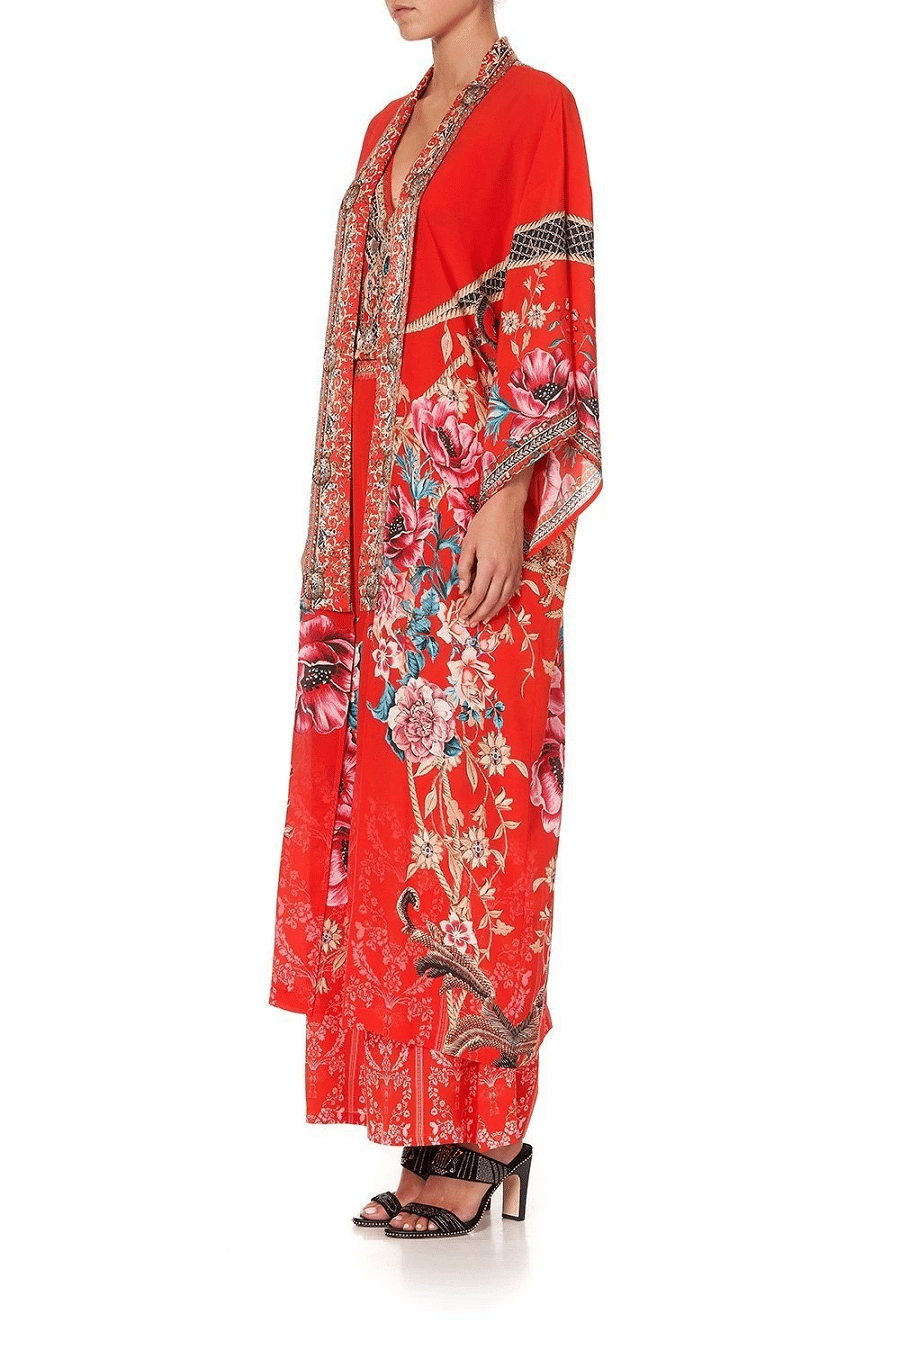 Woman wearing Long Silk Kimono Robe In Red